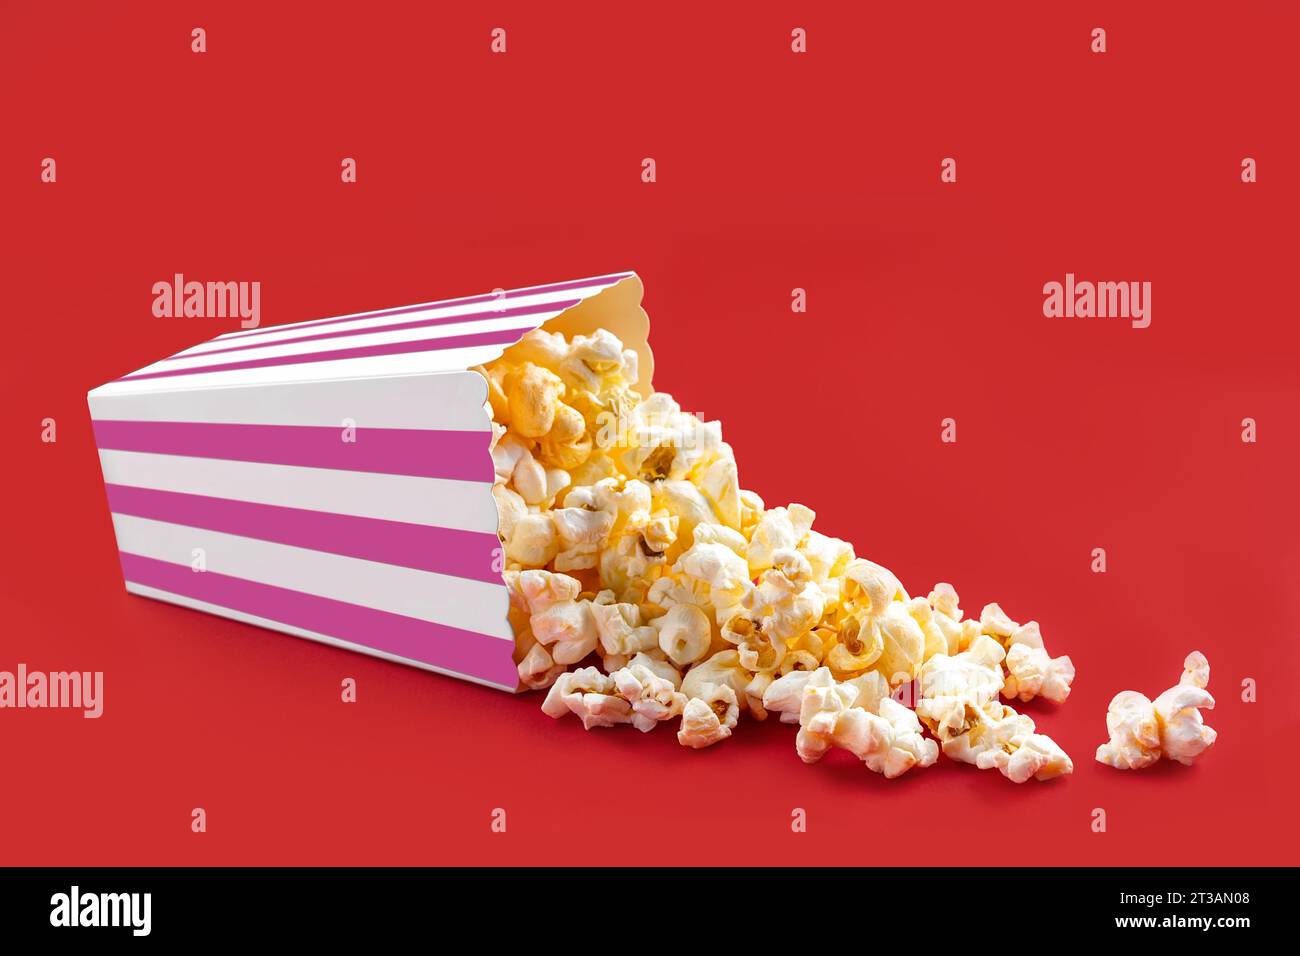 Gustosi popcorn al formaggio che cadono da una scatola di cartone a righe rosa o da un secchio, isolato su sfondo rosso. Dispersione di semi di popcorn. Fast food, snack. M Foto Stock